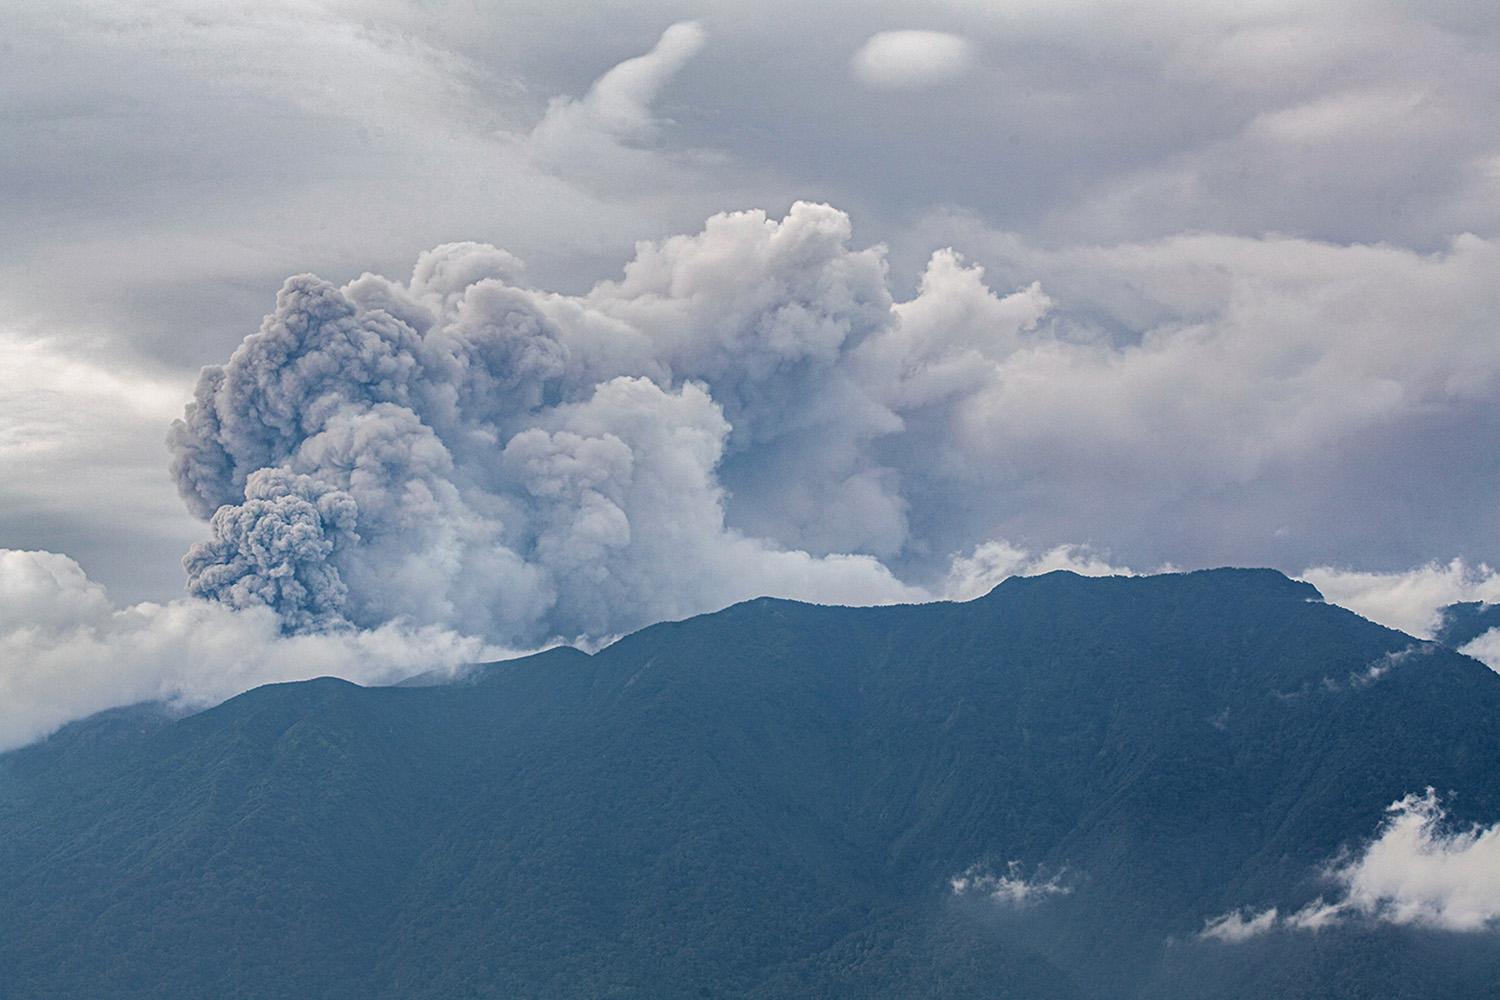 indonesia-volcano-spews-ash-tower-42-hikers-unaccounted-SPACEBAR-Hero.jpg